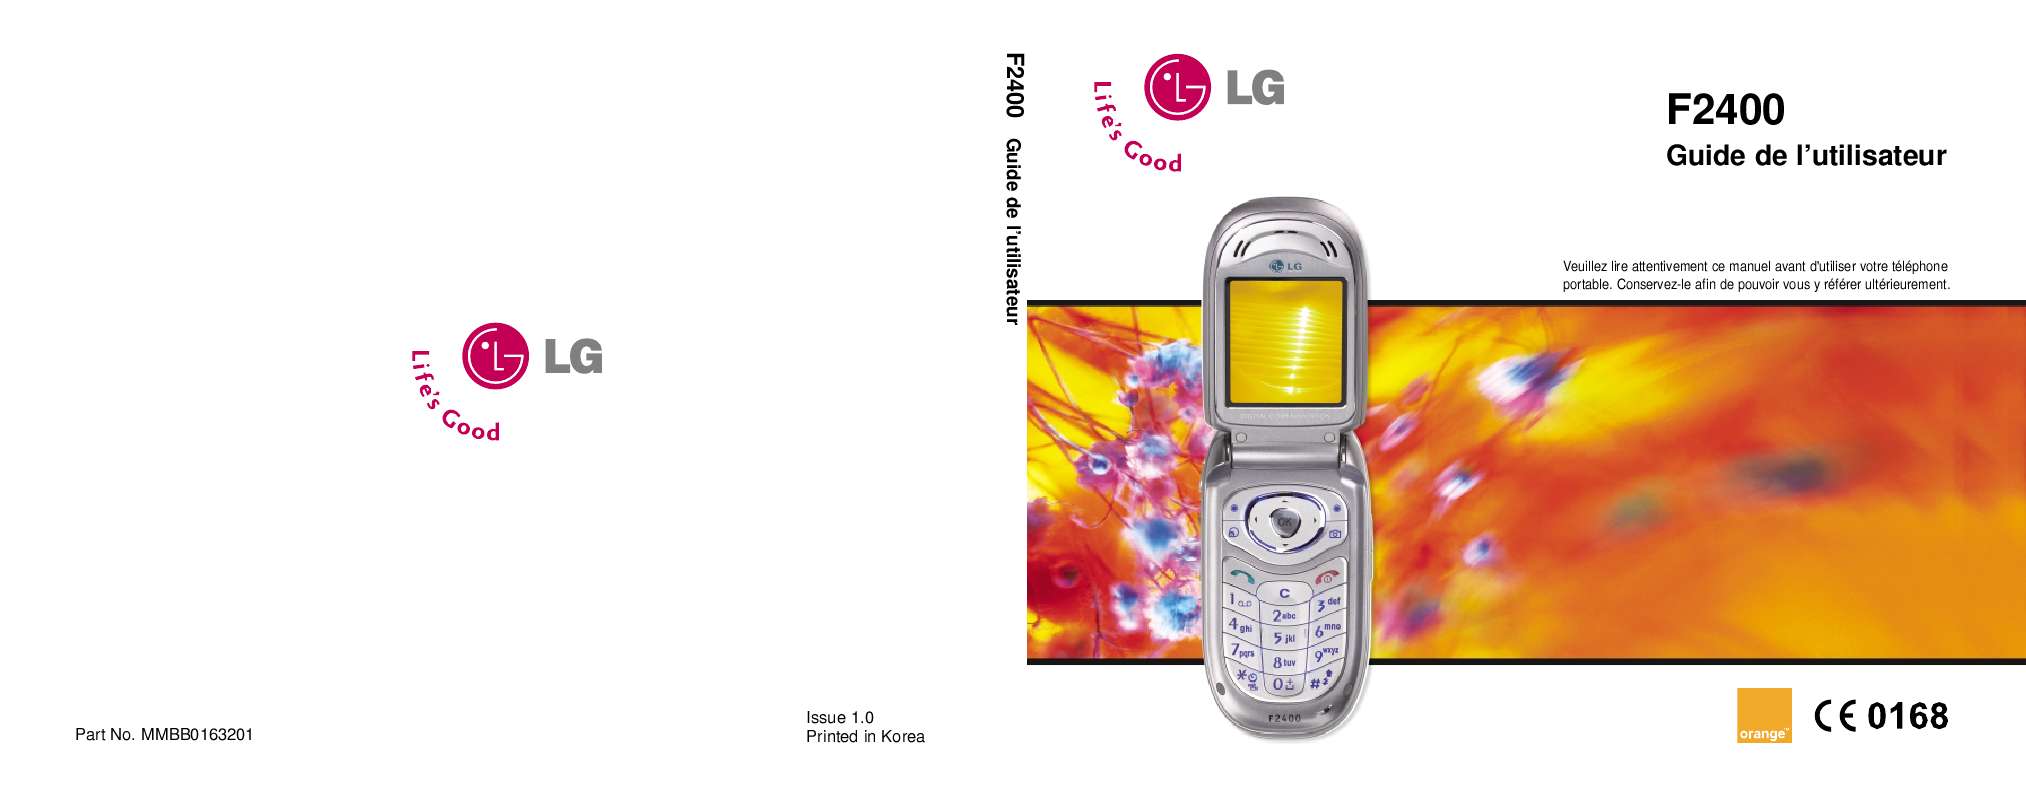 Guide utilisation LG F2400 de la marque LG